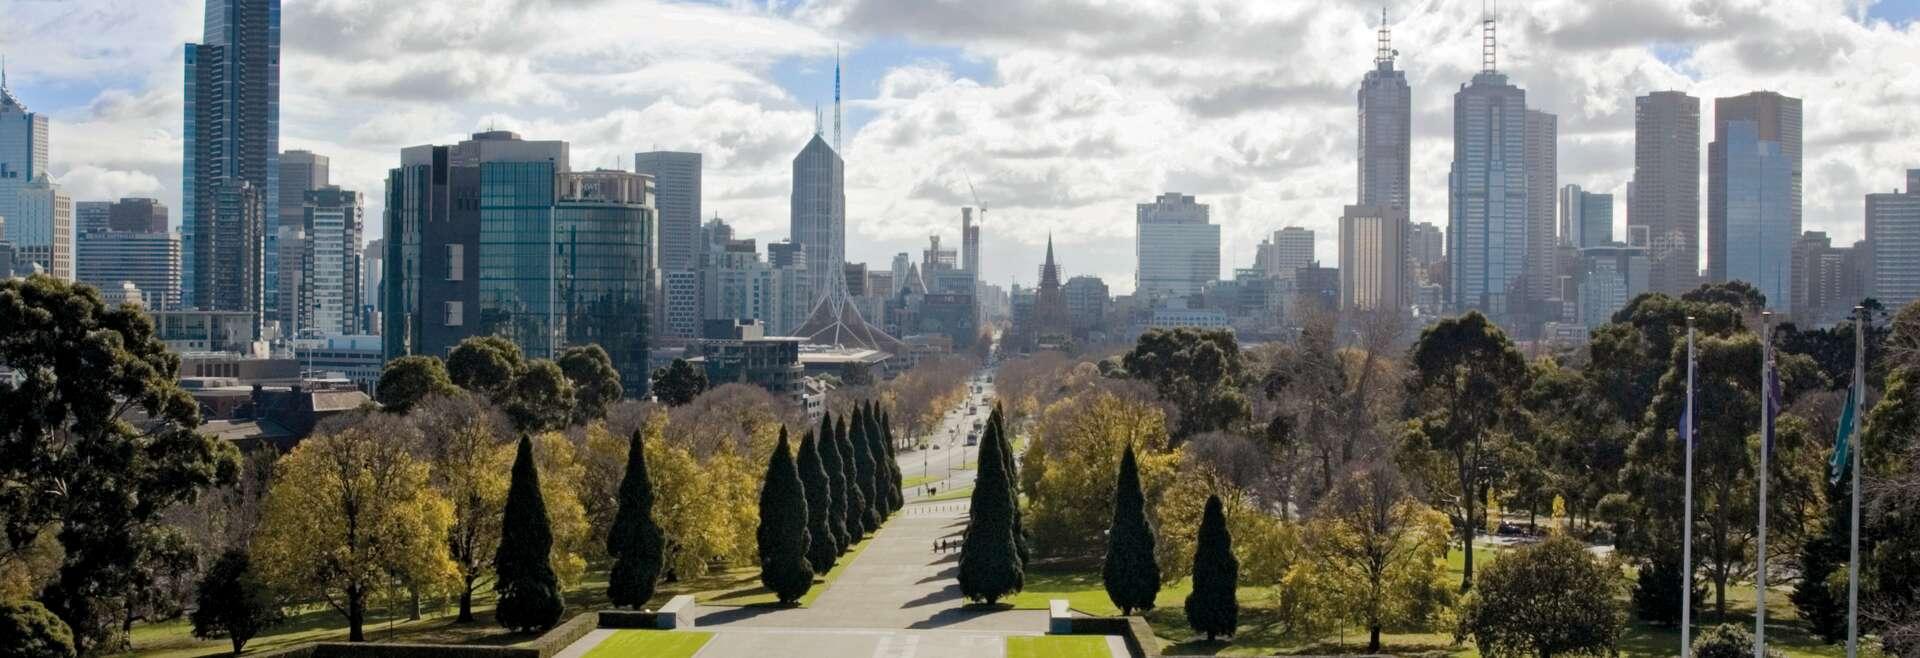 Séjour linguistique Australie, Melbourne, Skyline